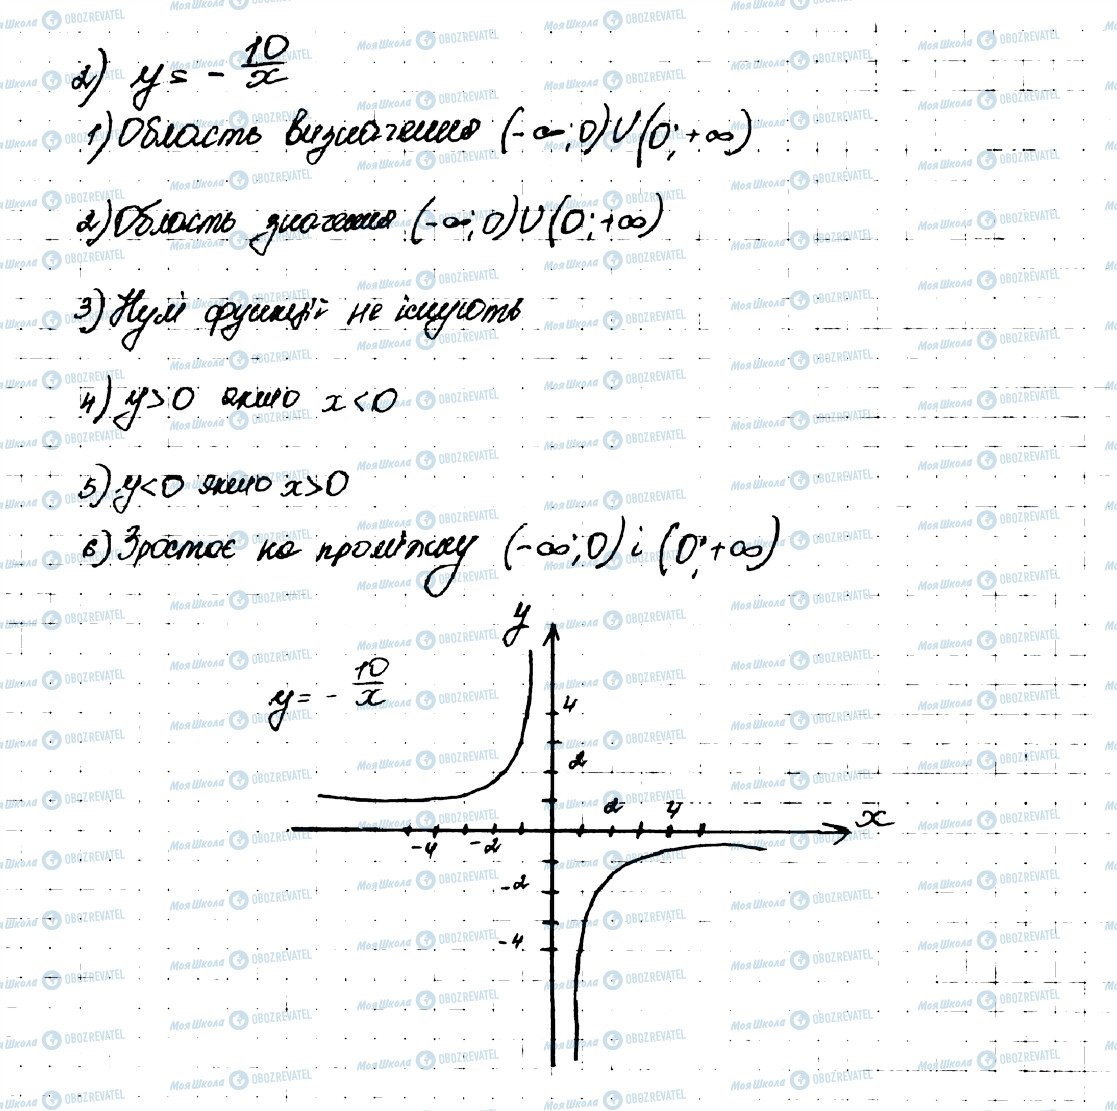 ГДЗ Алгебра 9 класс страница 377